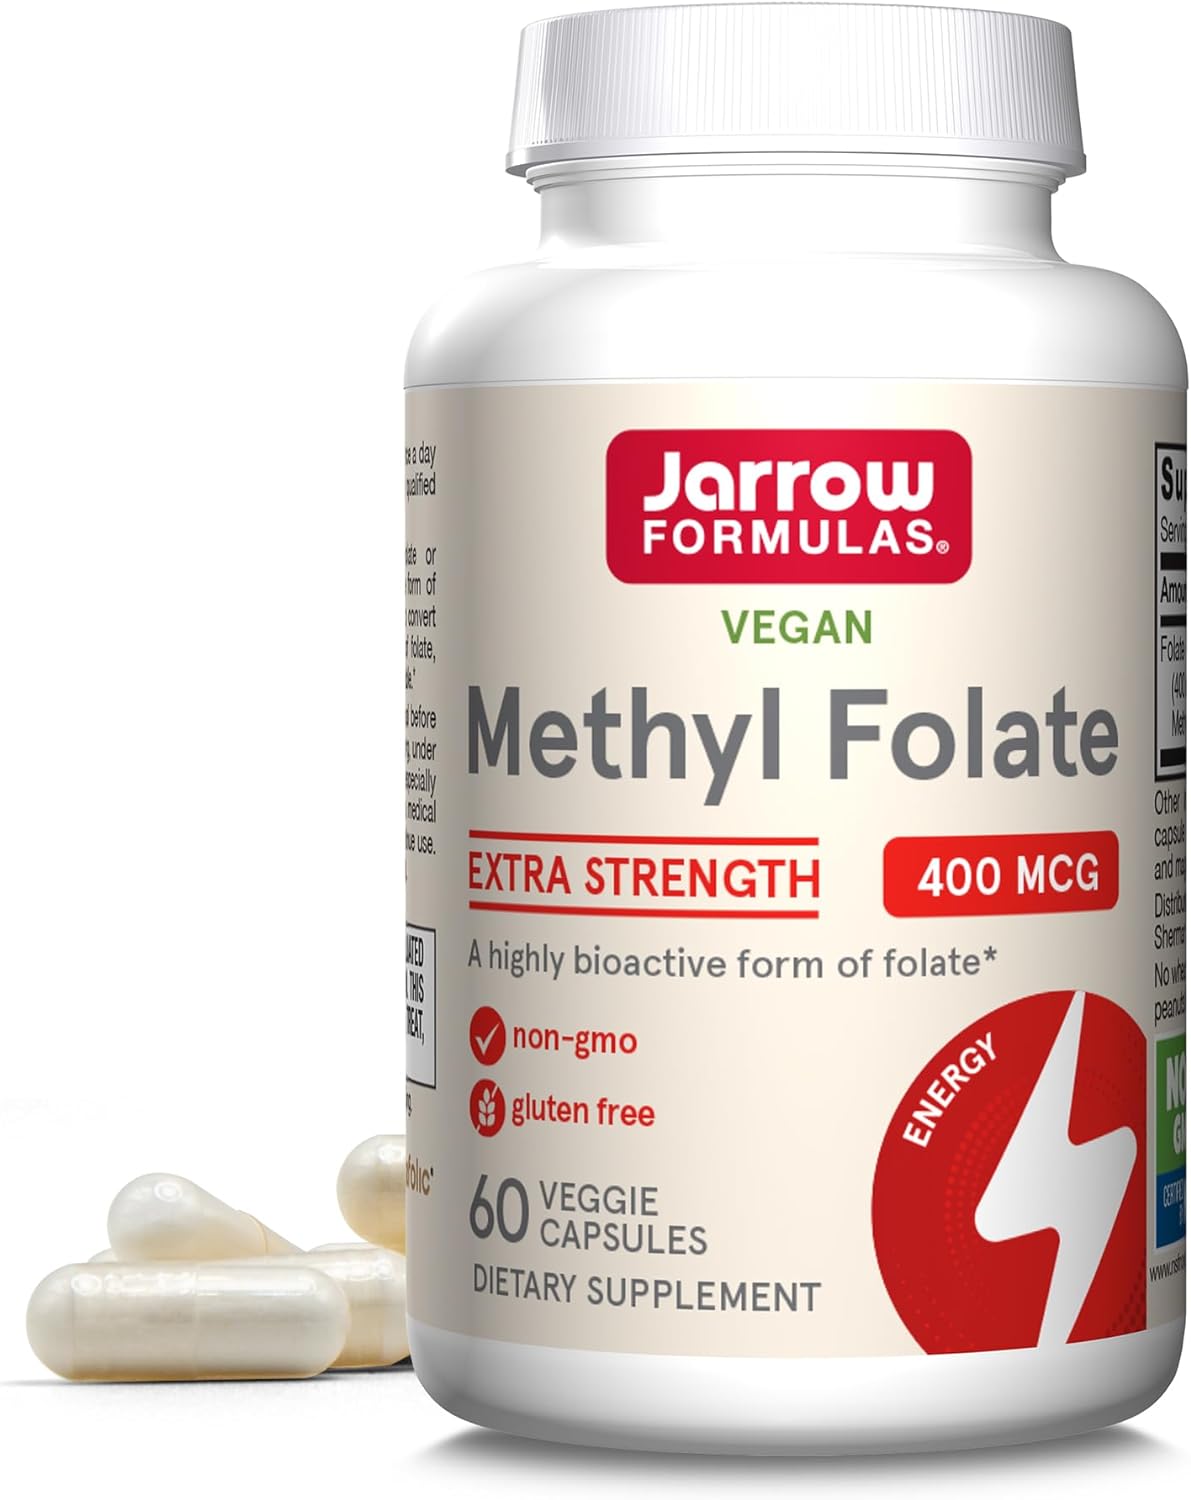 Jarrow Methyl Folate